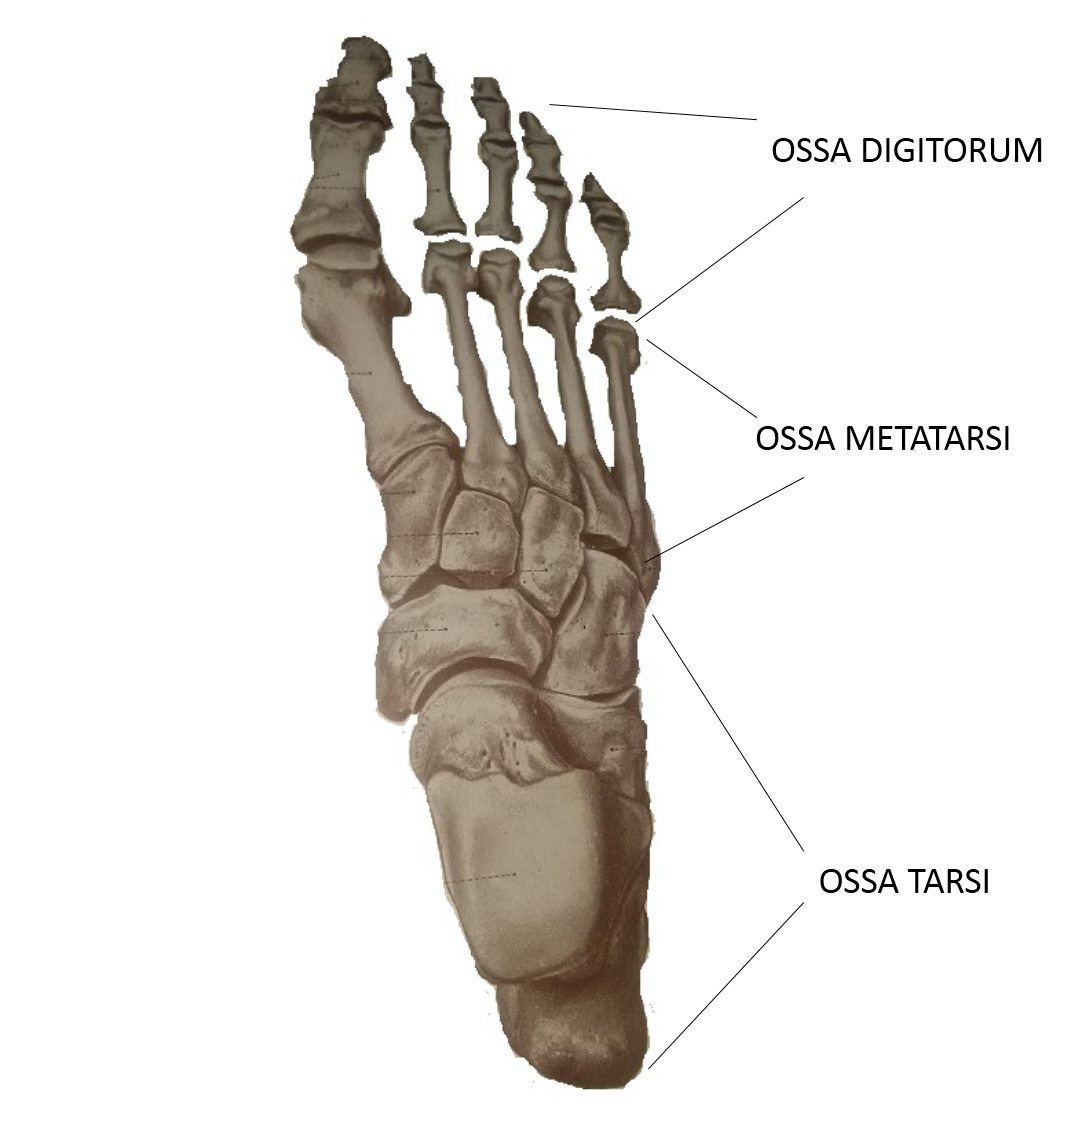 Фаланги стопы. Кости стопы (ossa pedis). Сесамовидная ладьевидная кость. Ossa pedis анатомия. Сесамовидная кость стопы.